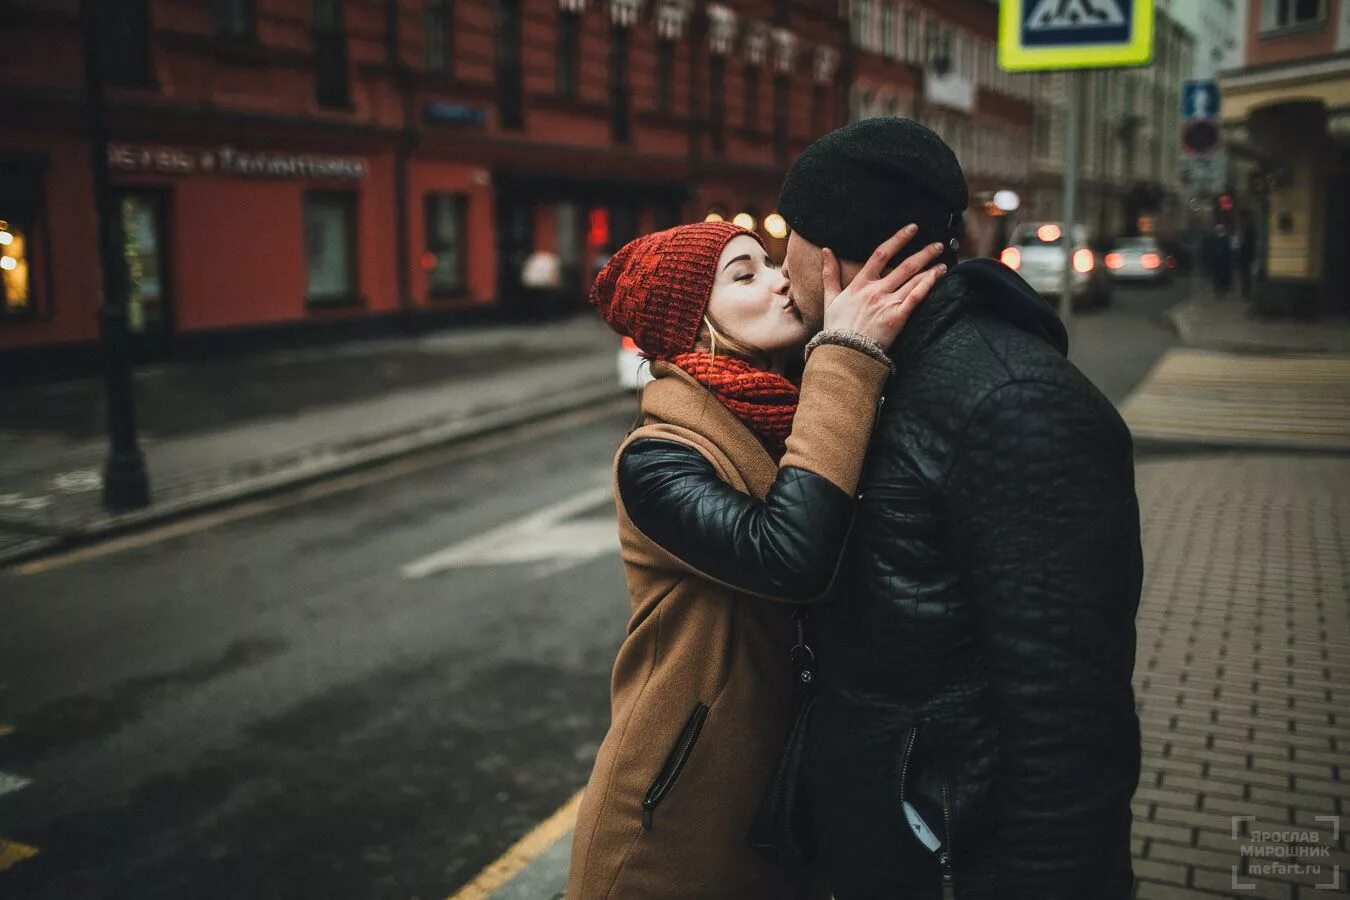 Фотосессия лав стори в Москве. Фотосессия пары в городе. Поцелуй на улице. Фотосессия лавстори в городе. Город лов